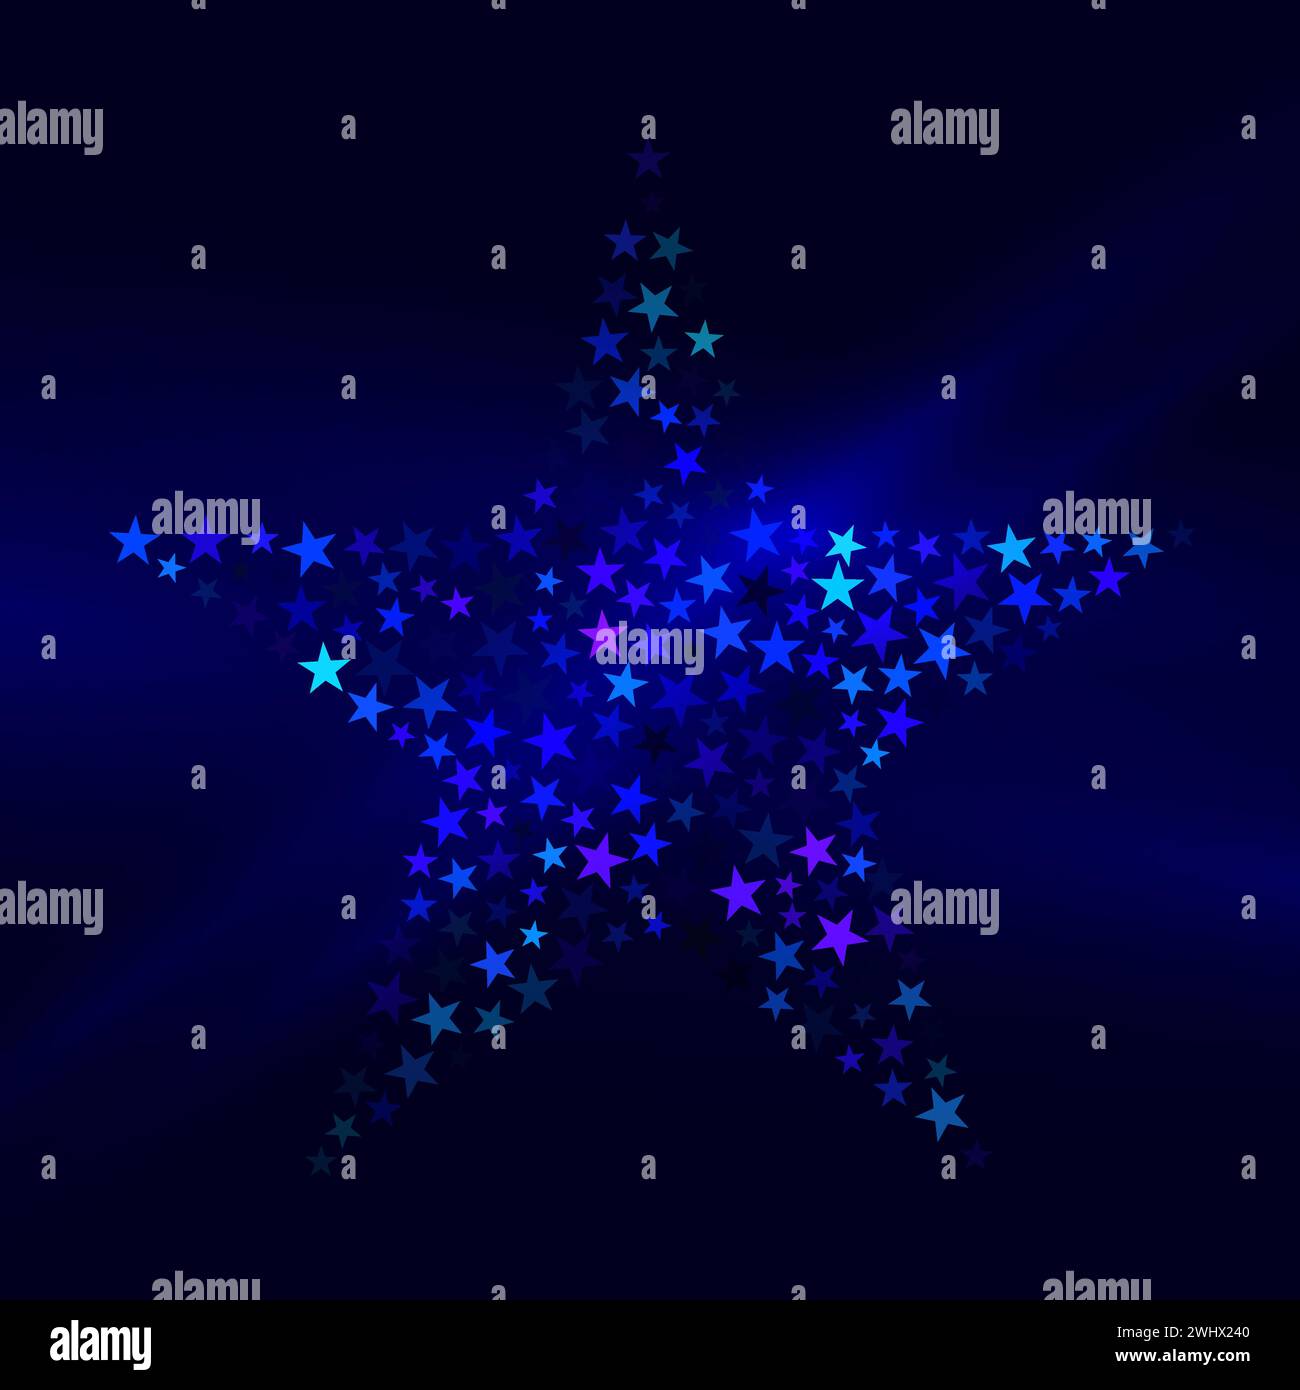 Una grande forma a stella composta da piccole stelle argentate lucide su sfondo blu scuro con raggi chiari, illustrazione vettoriale Illustrazione Vettoriale